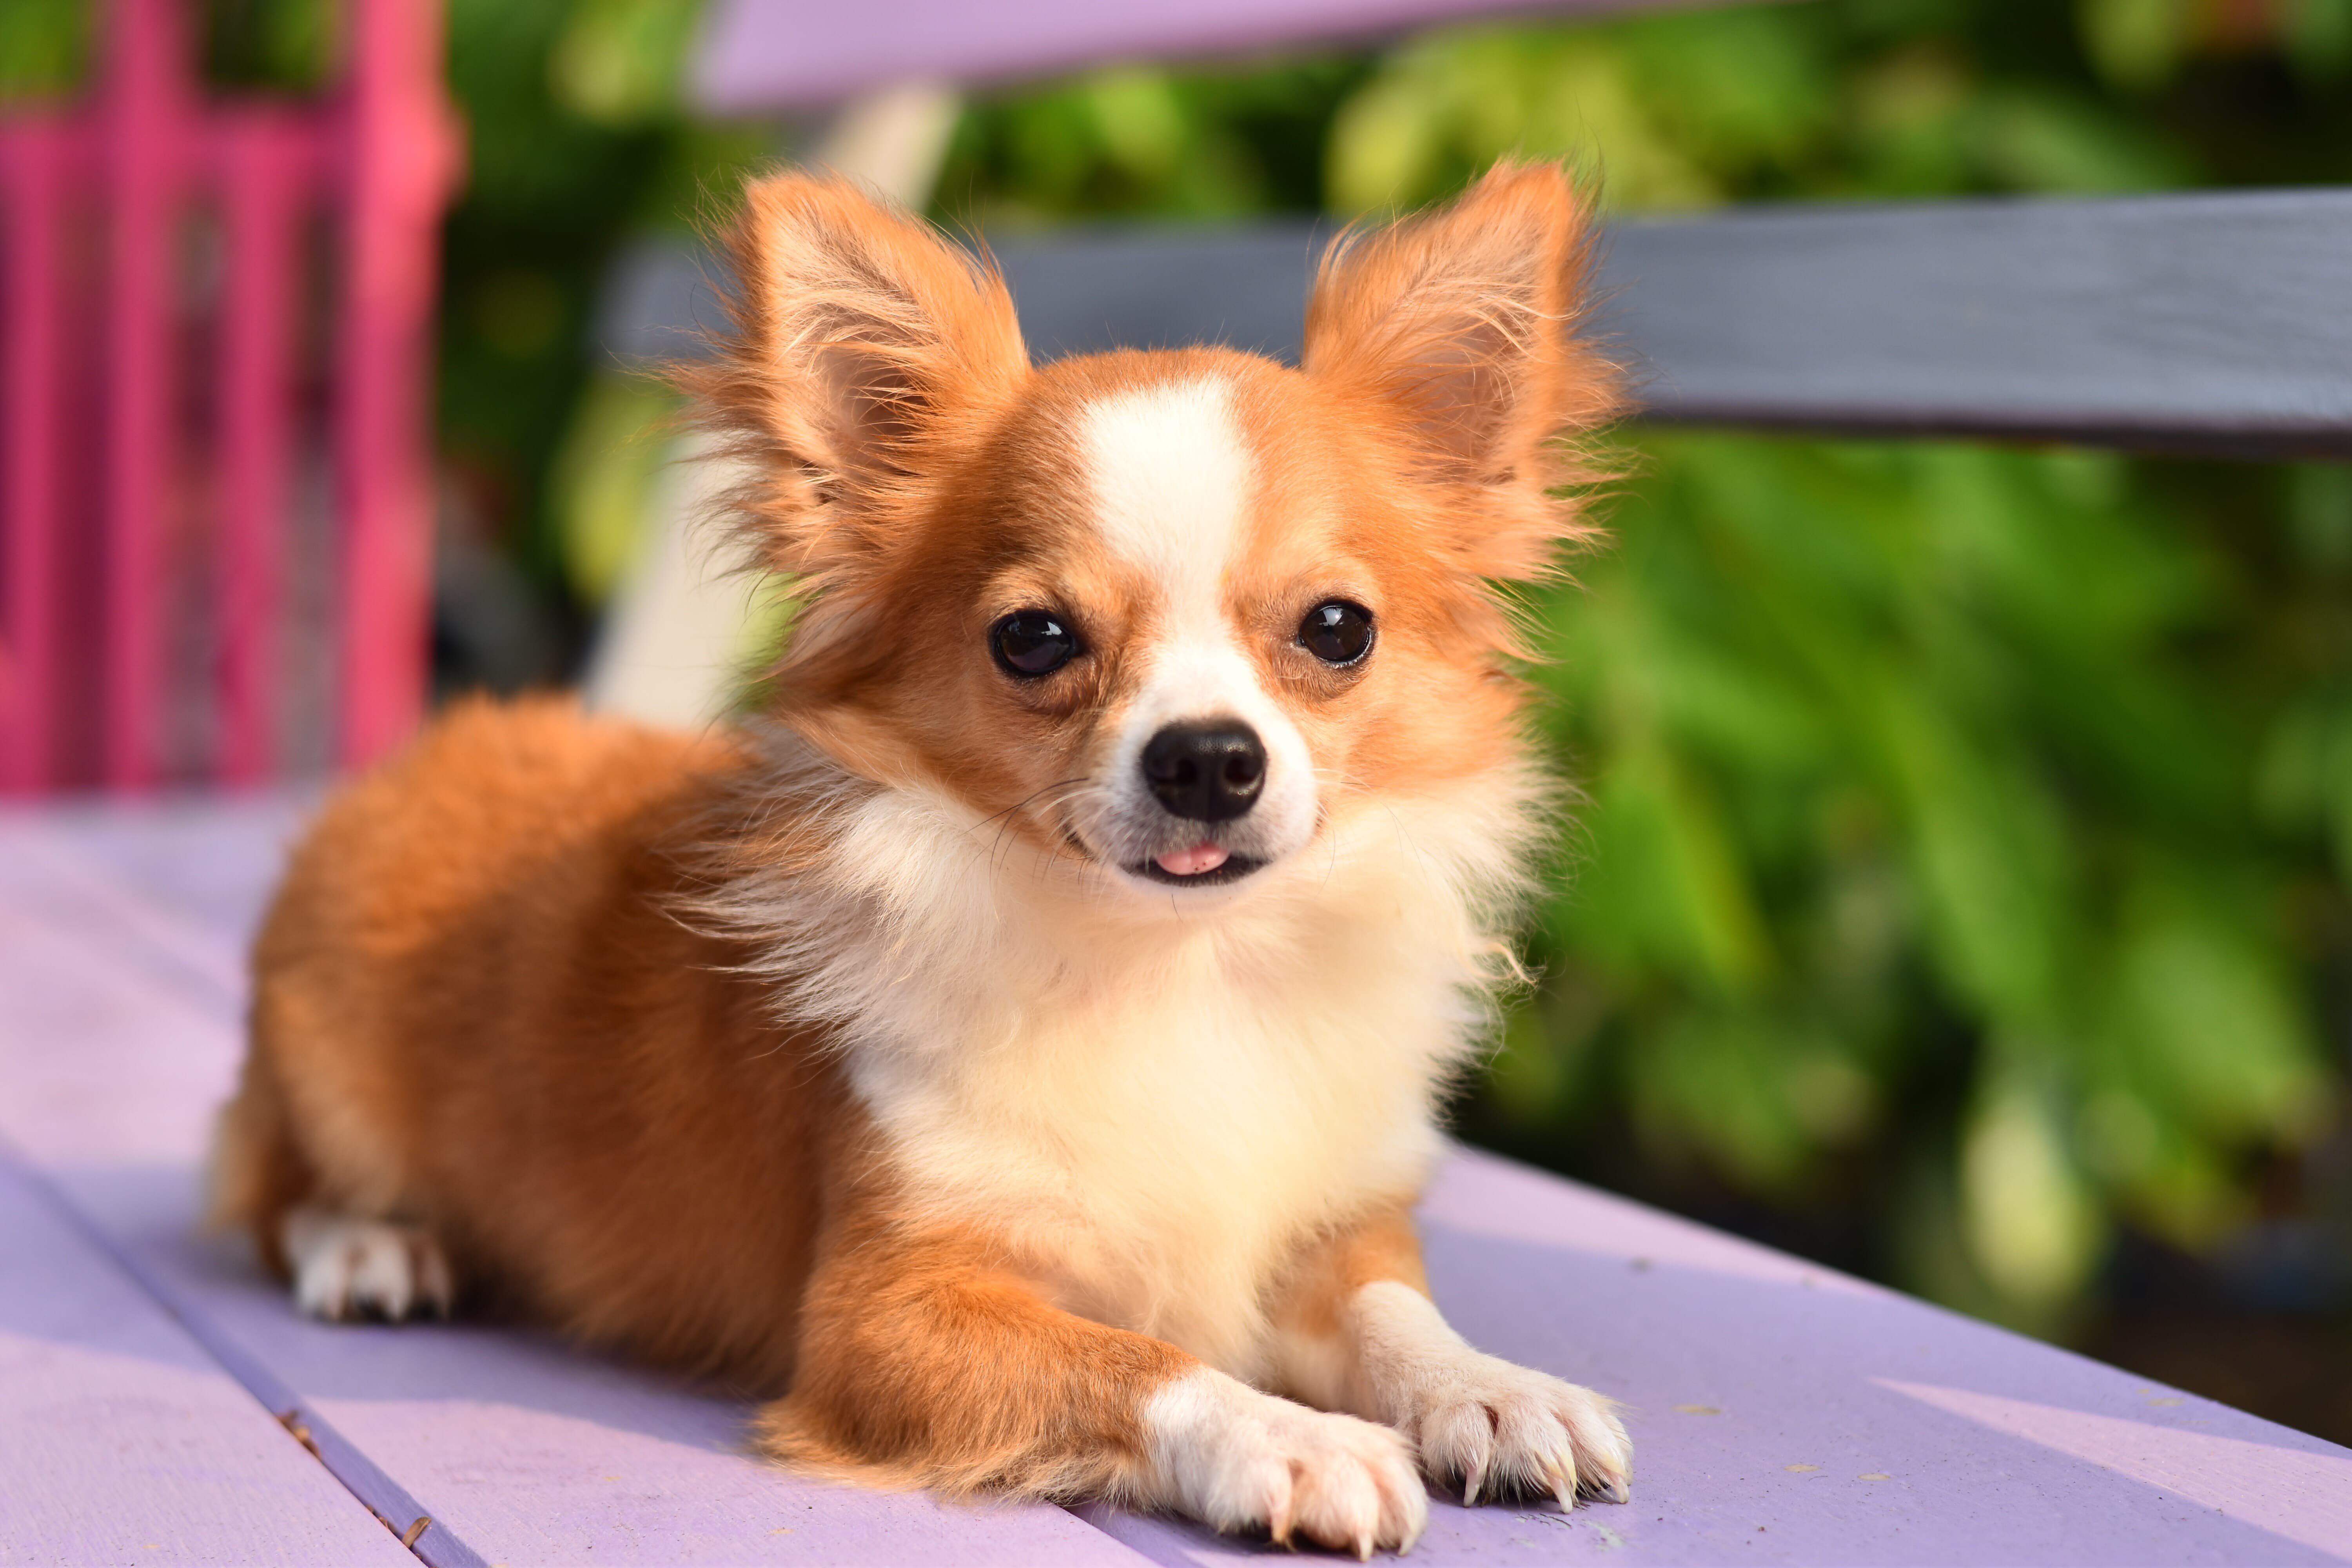 Imagem de um cachorro pequeno da raça Chihuahua amarelo e branco, deitado em um banco roxo com a ponta da língua para fora. Ao fundo, há árvores e uma grade rosa.